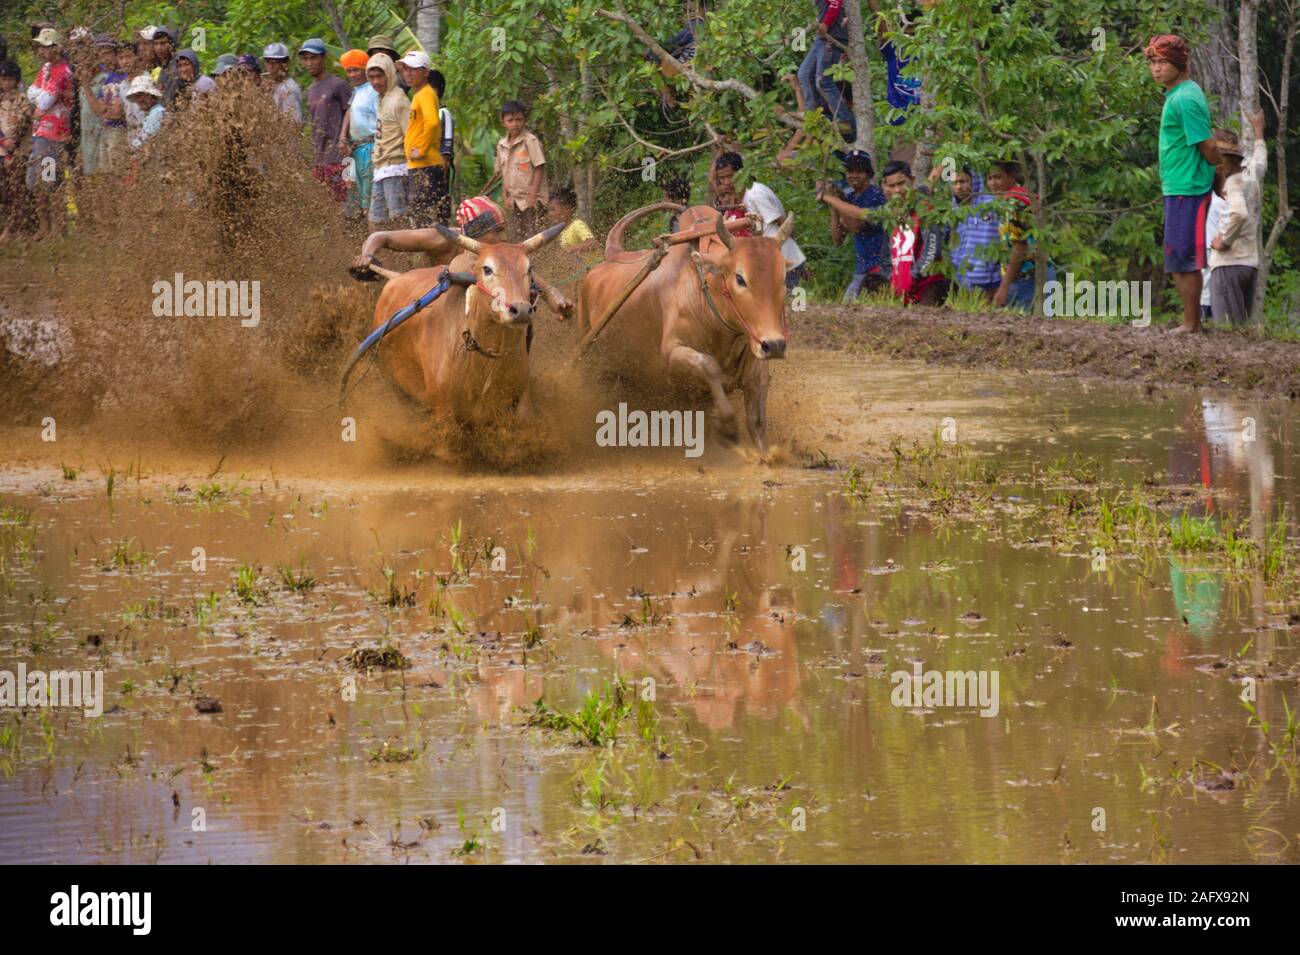 La SSPI jawi 'race' de Bull Bull est une course à l'Ouest de Sumatra. Dans la course, d'un jockey est maintenant une paire de taureaux vaguement lié Banque D'Images